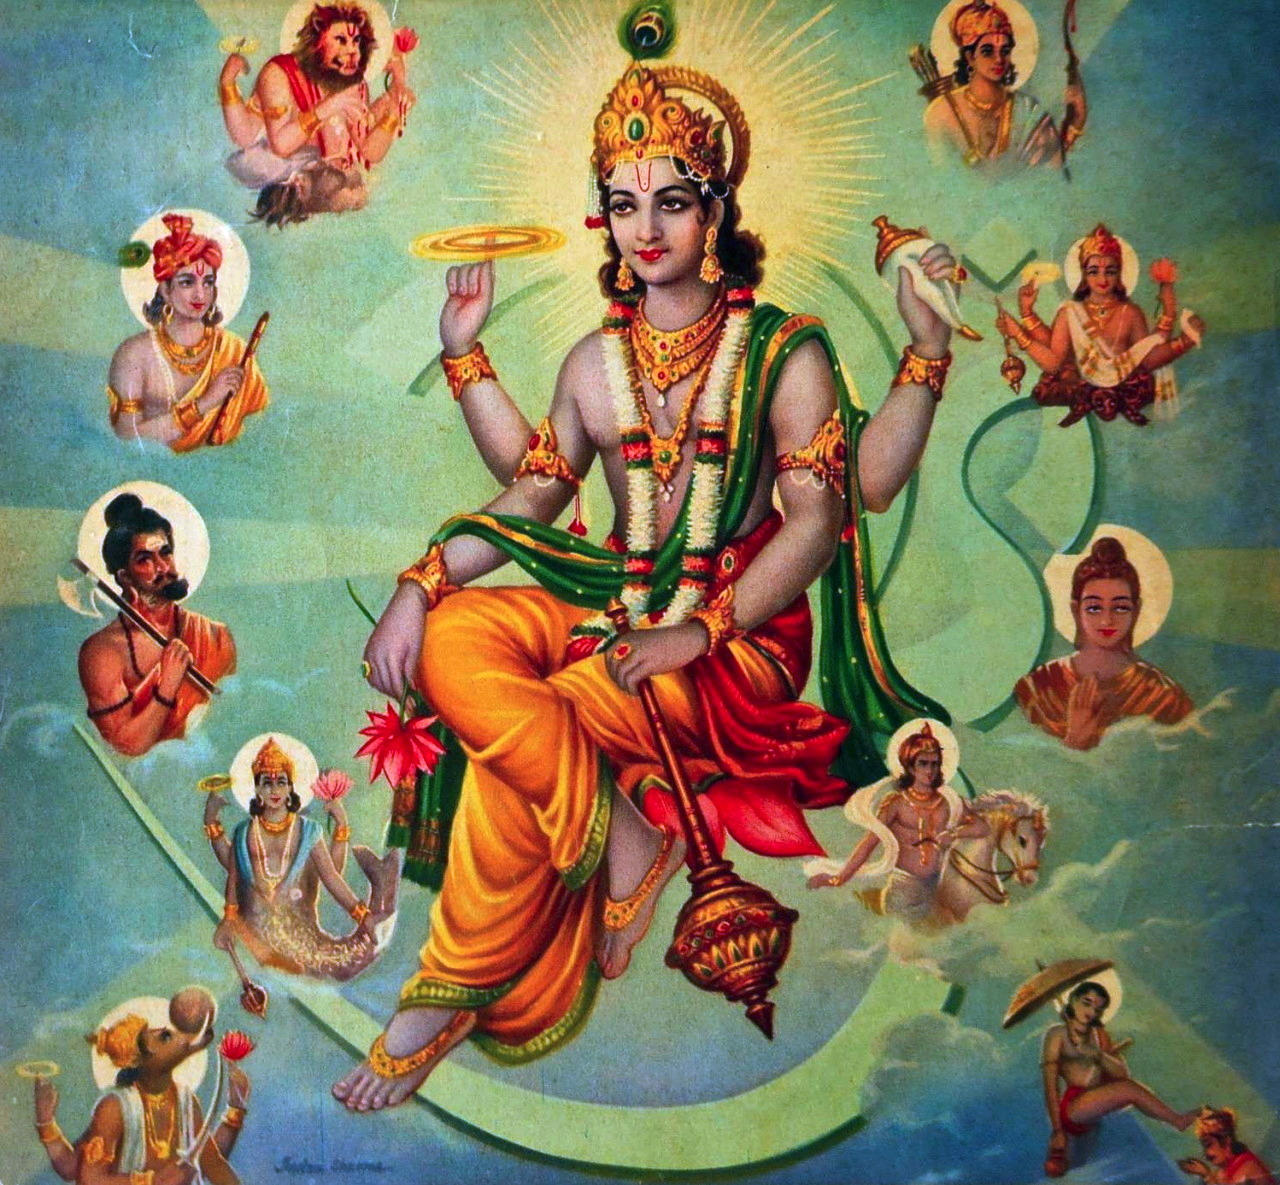 Vishnu God Images: A Stunning Collection of Over 999+ High-Quality 4K Images